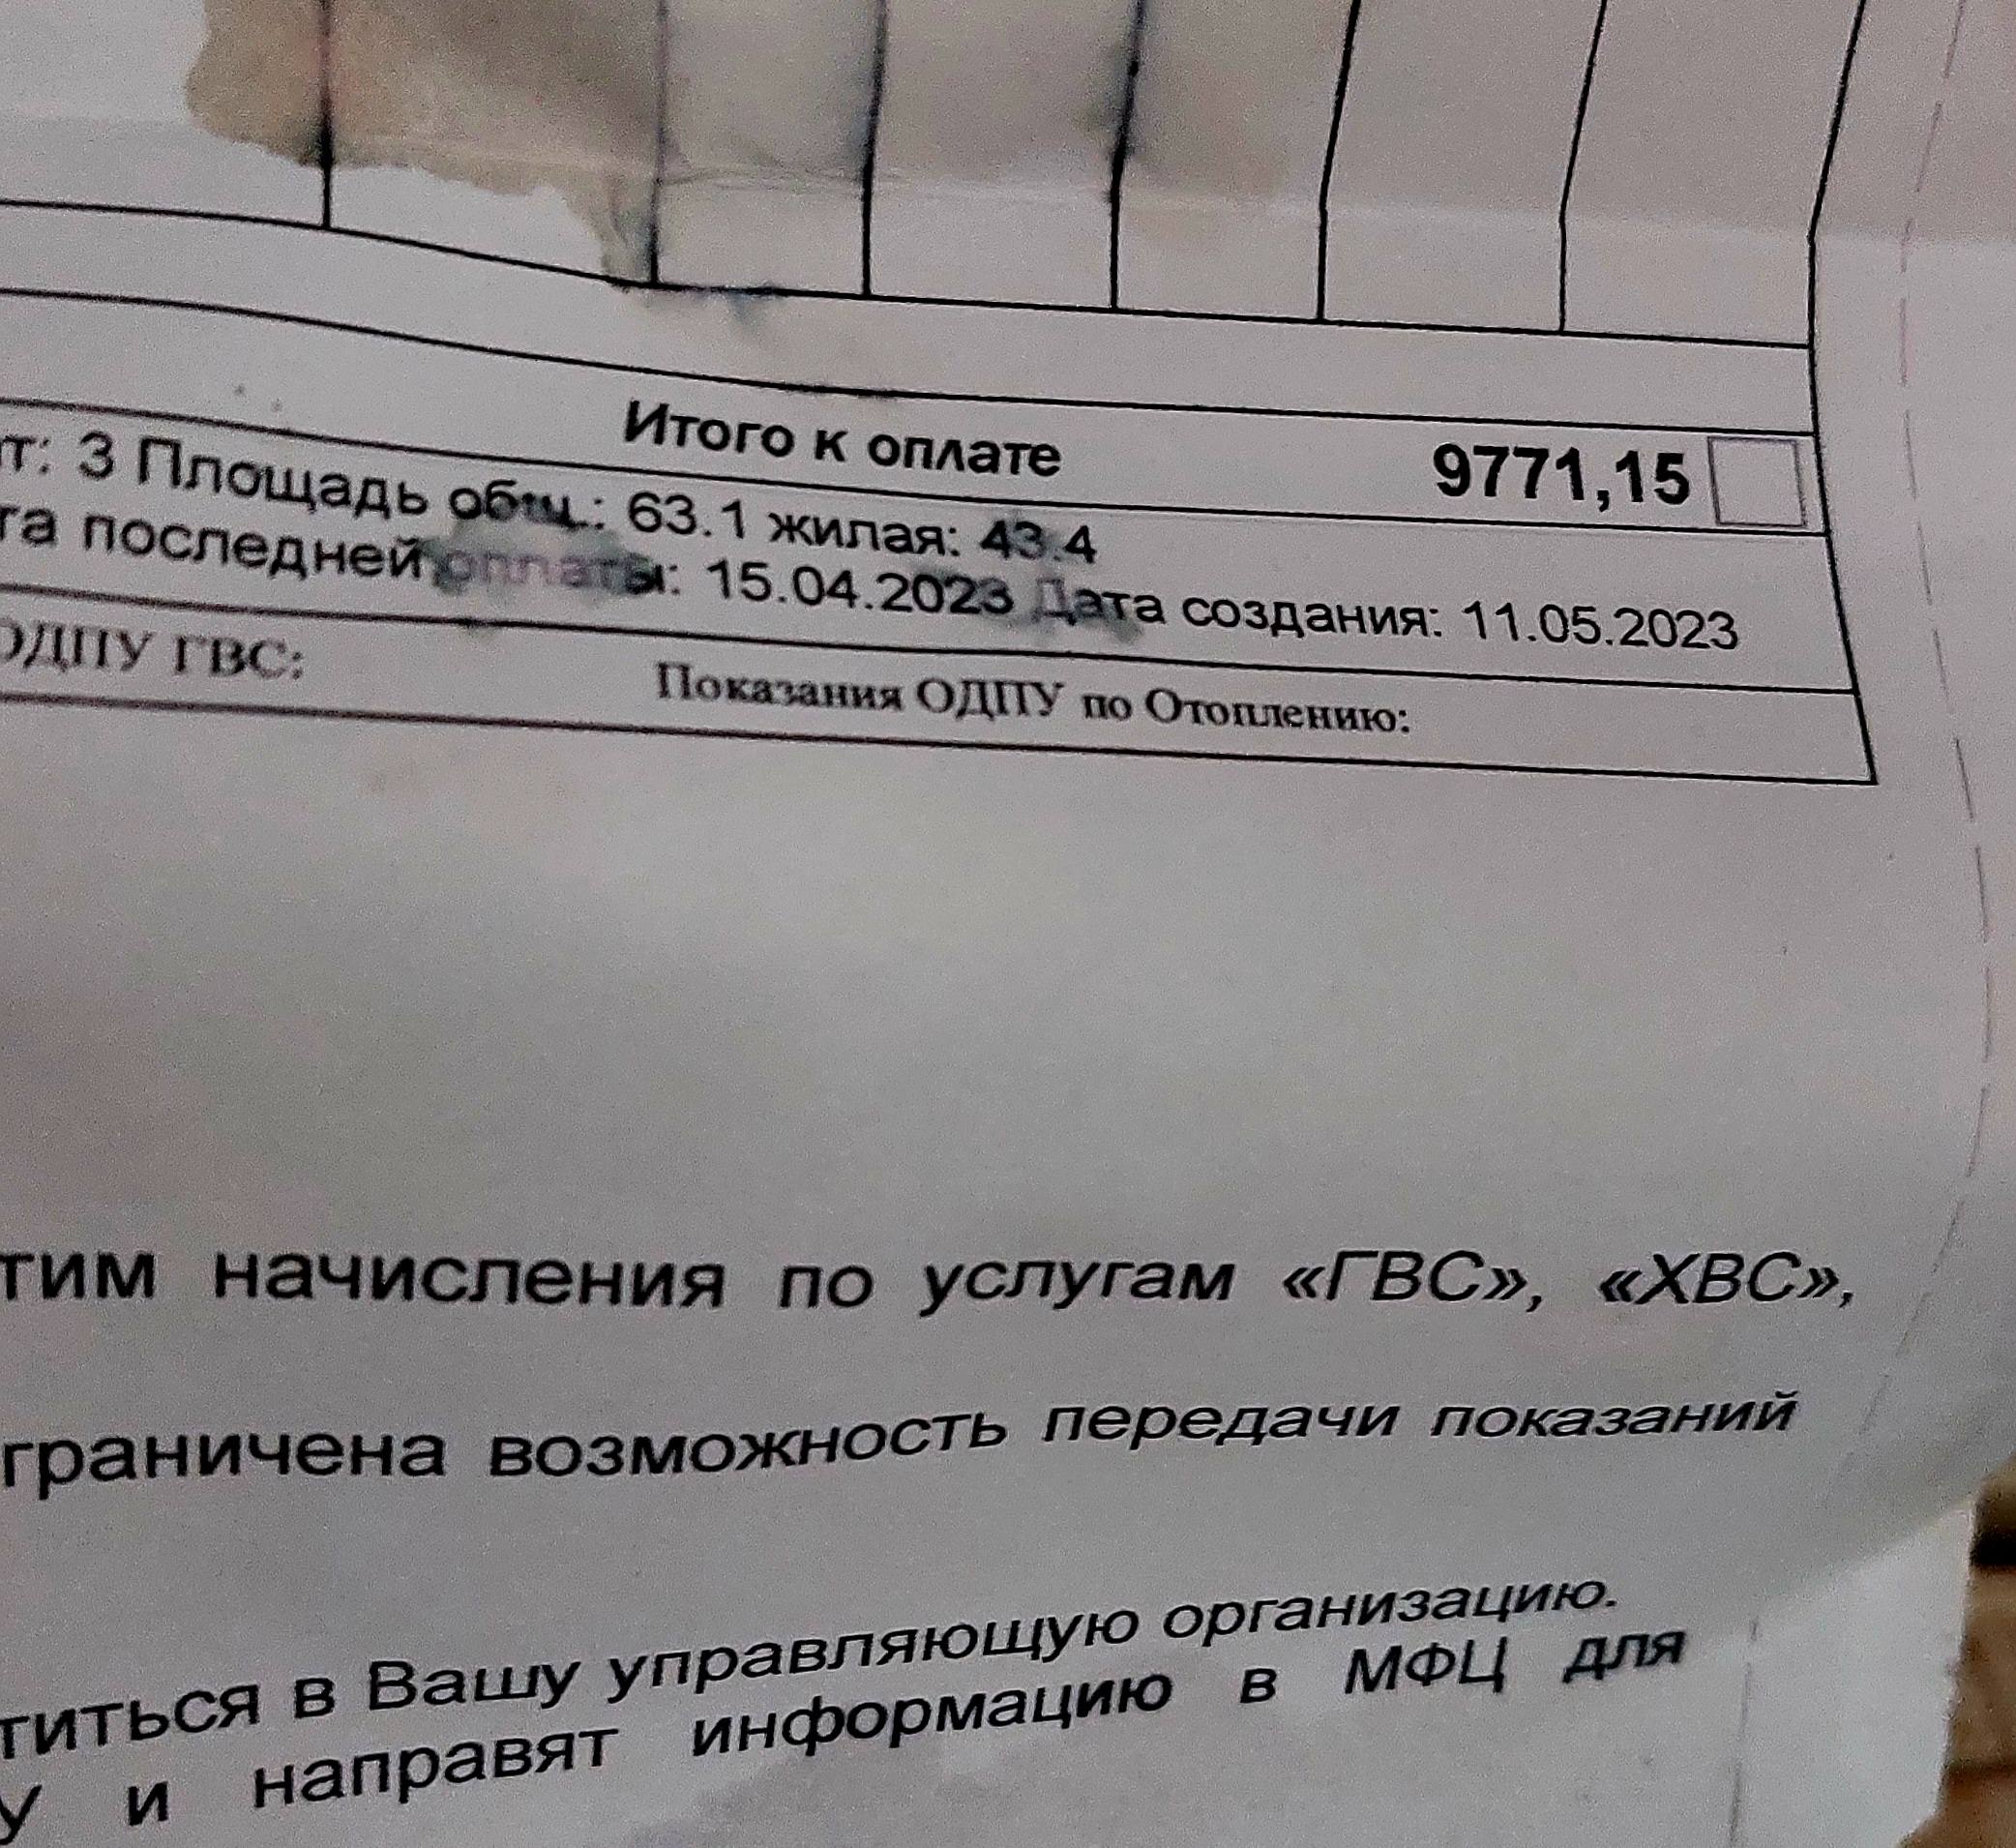 Не хватает 1000 рублей на оплату общедом квитанции